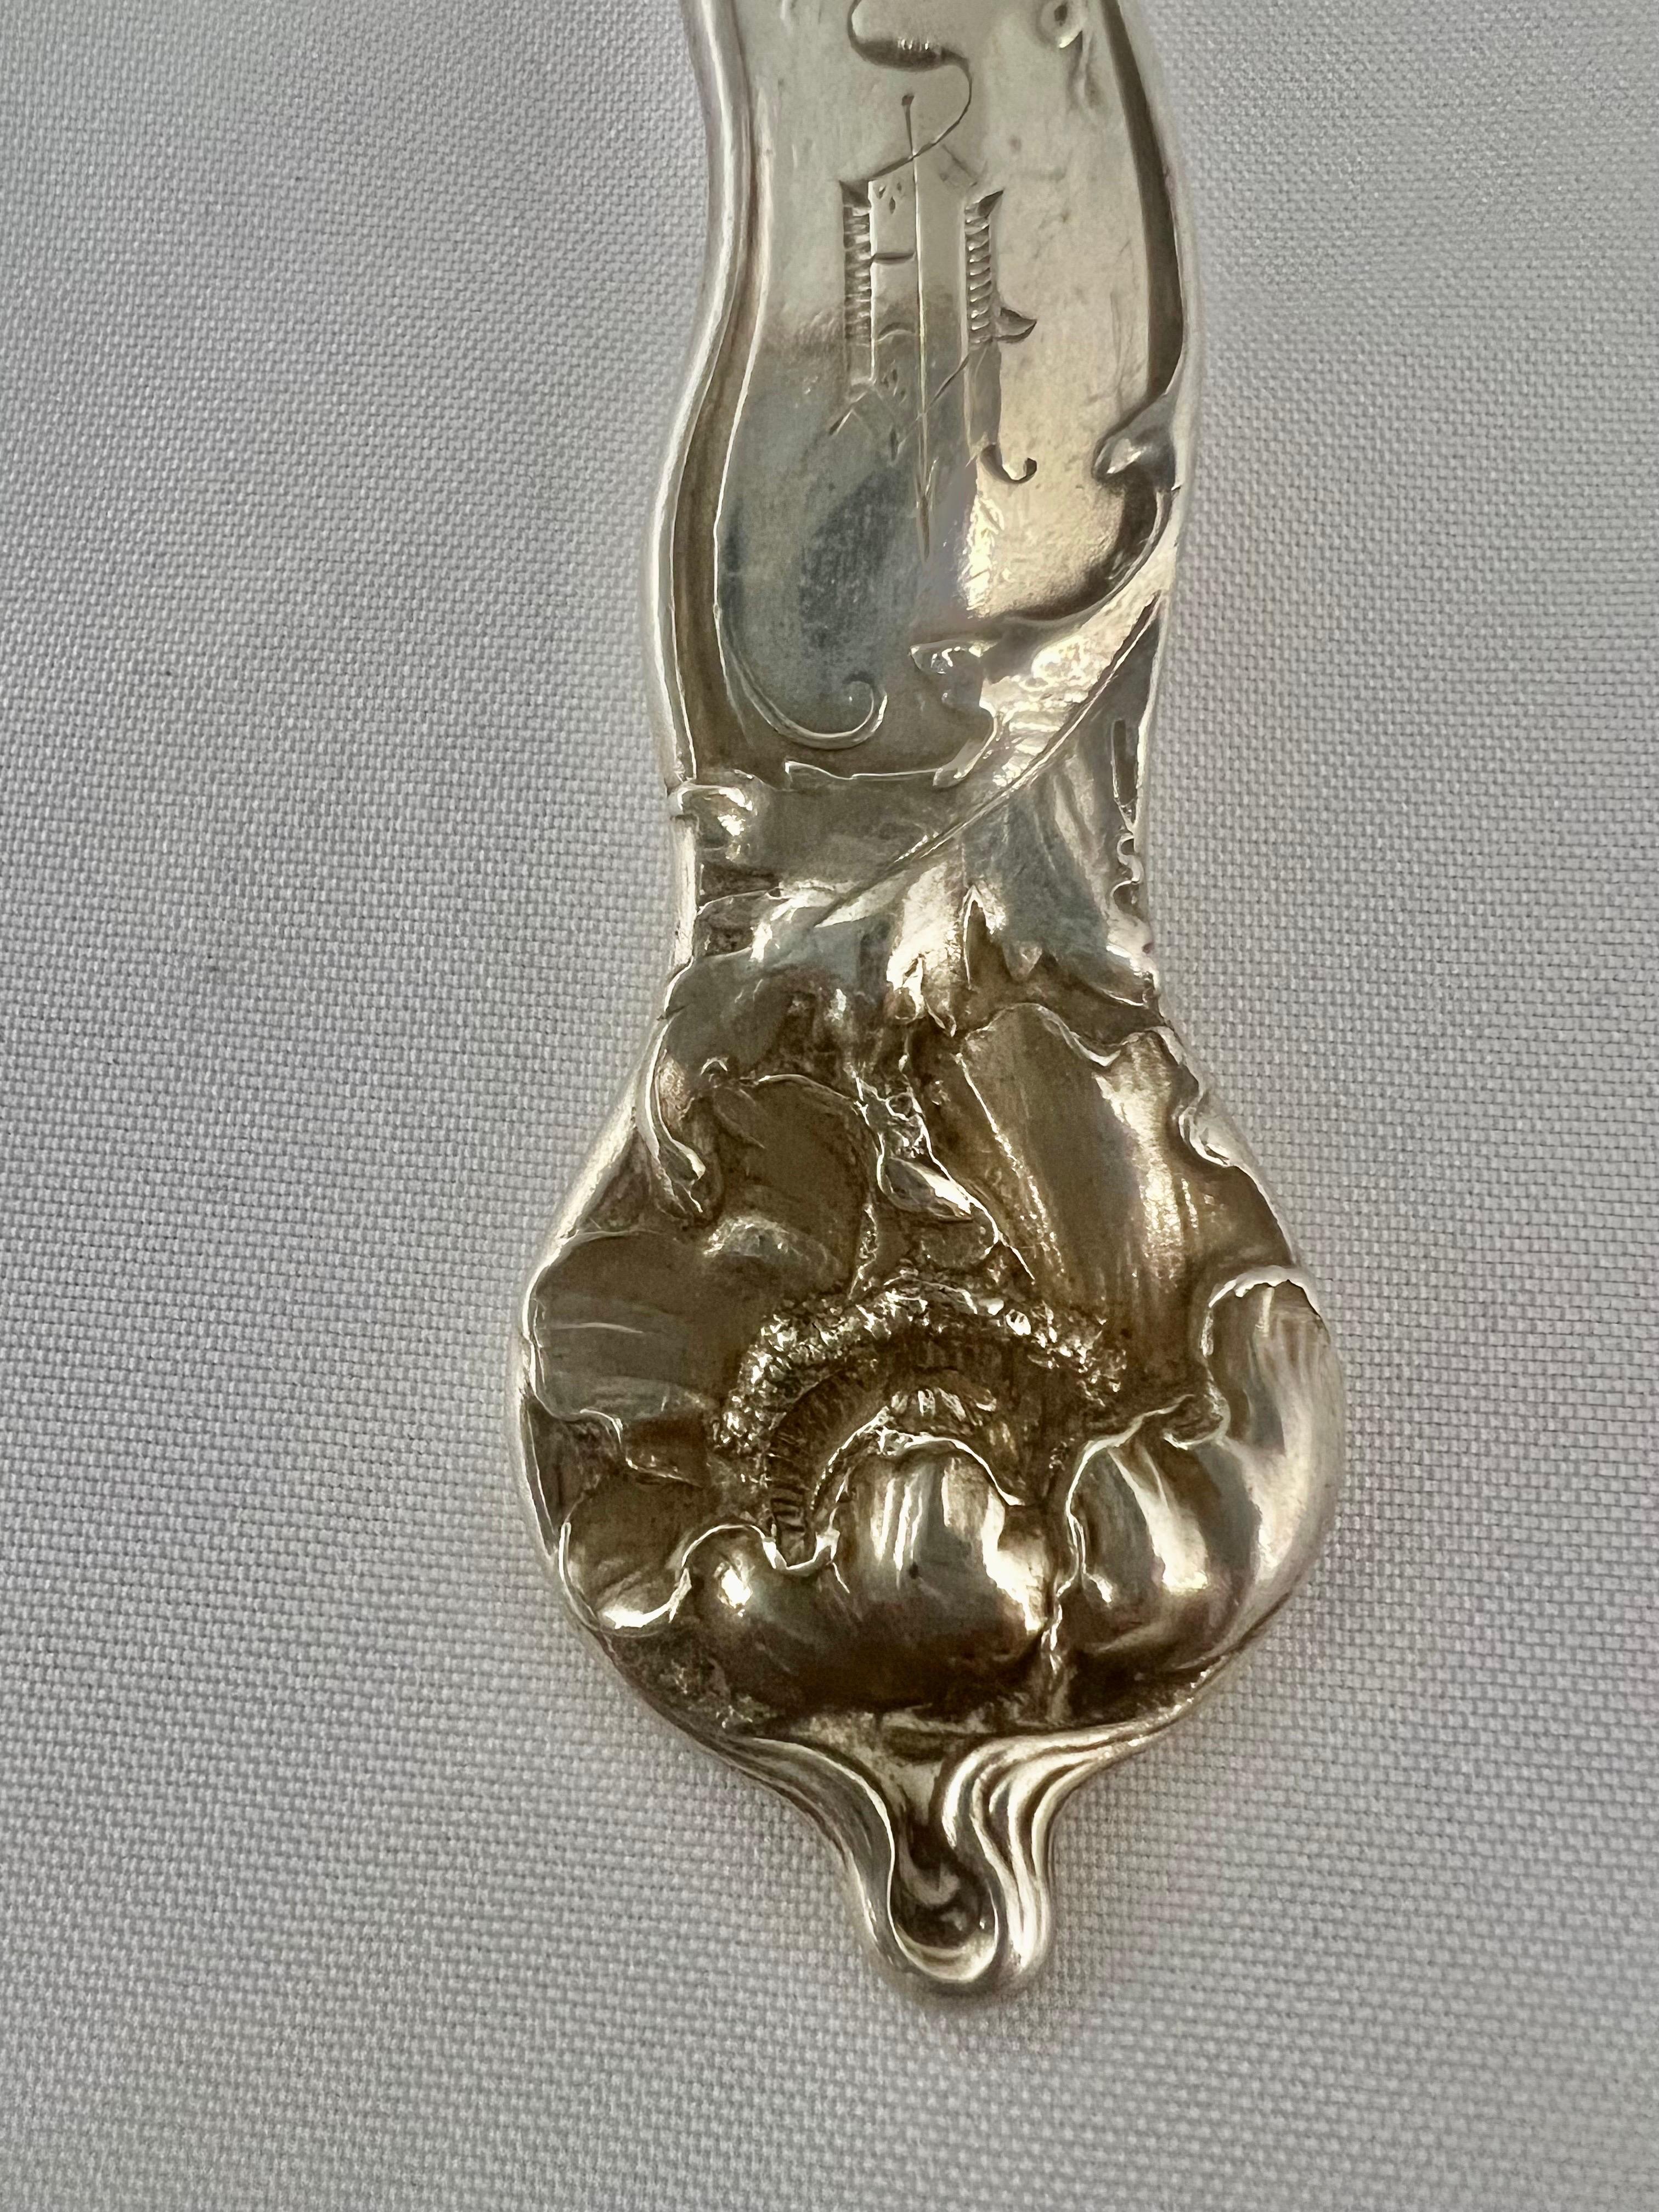 Ein Servierlöffel aus Sterlingsilber im Jugendstil von George W. Shiebler & Company.  Dieses Stück zeigt die charakteristischen, fließenden Linien des Jugendstils.  Die Stücke aus dieser Epoche zeichnen sich häufig durch von der Natur inspirierte